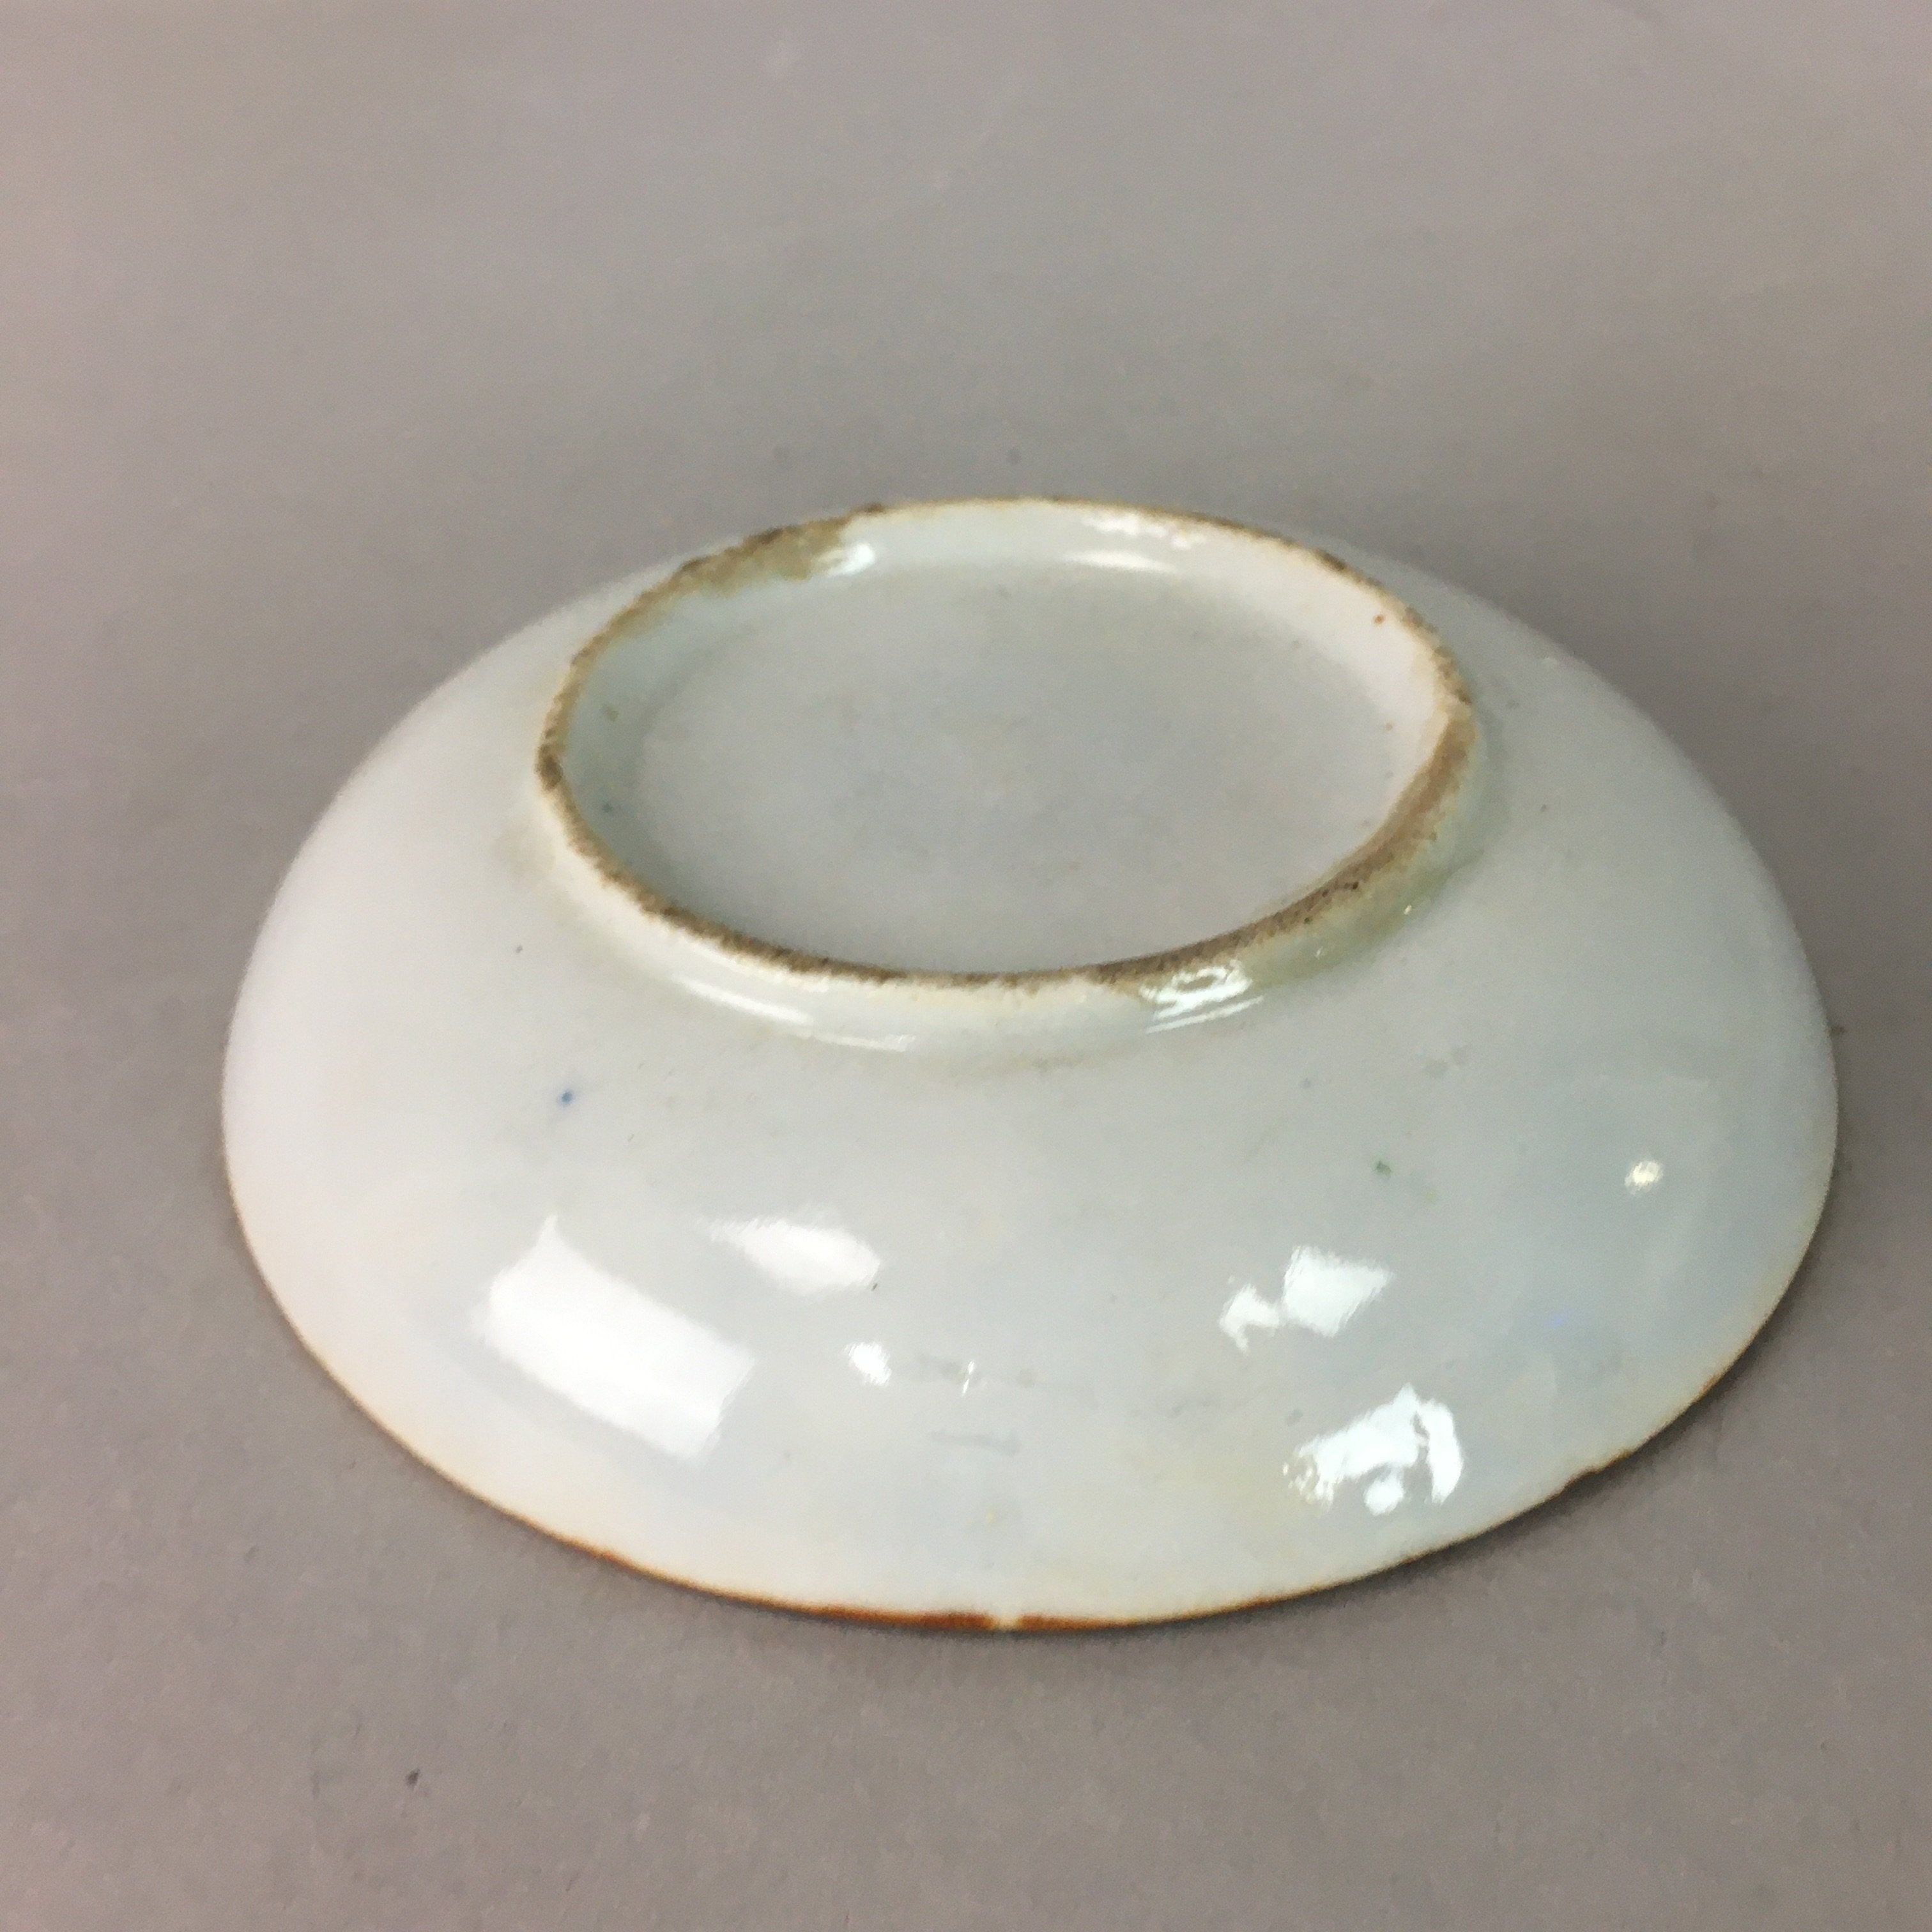 Japanese Porcelain Small Plate Vtg Kozara Blue White Geometric Floral PP102